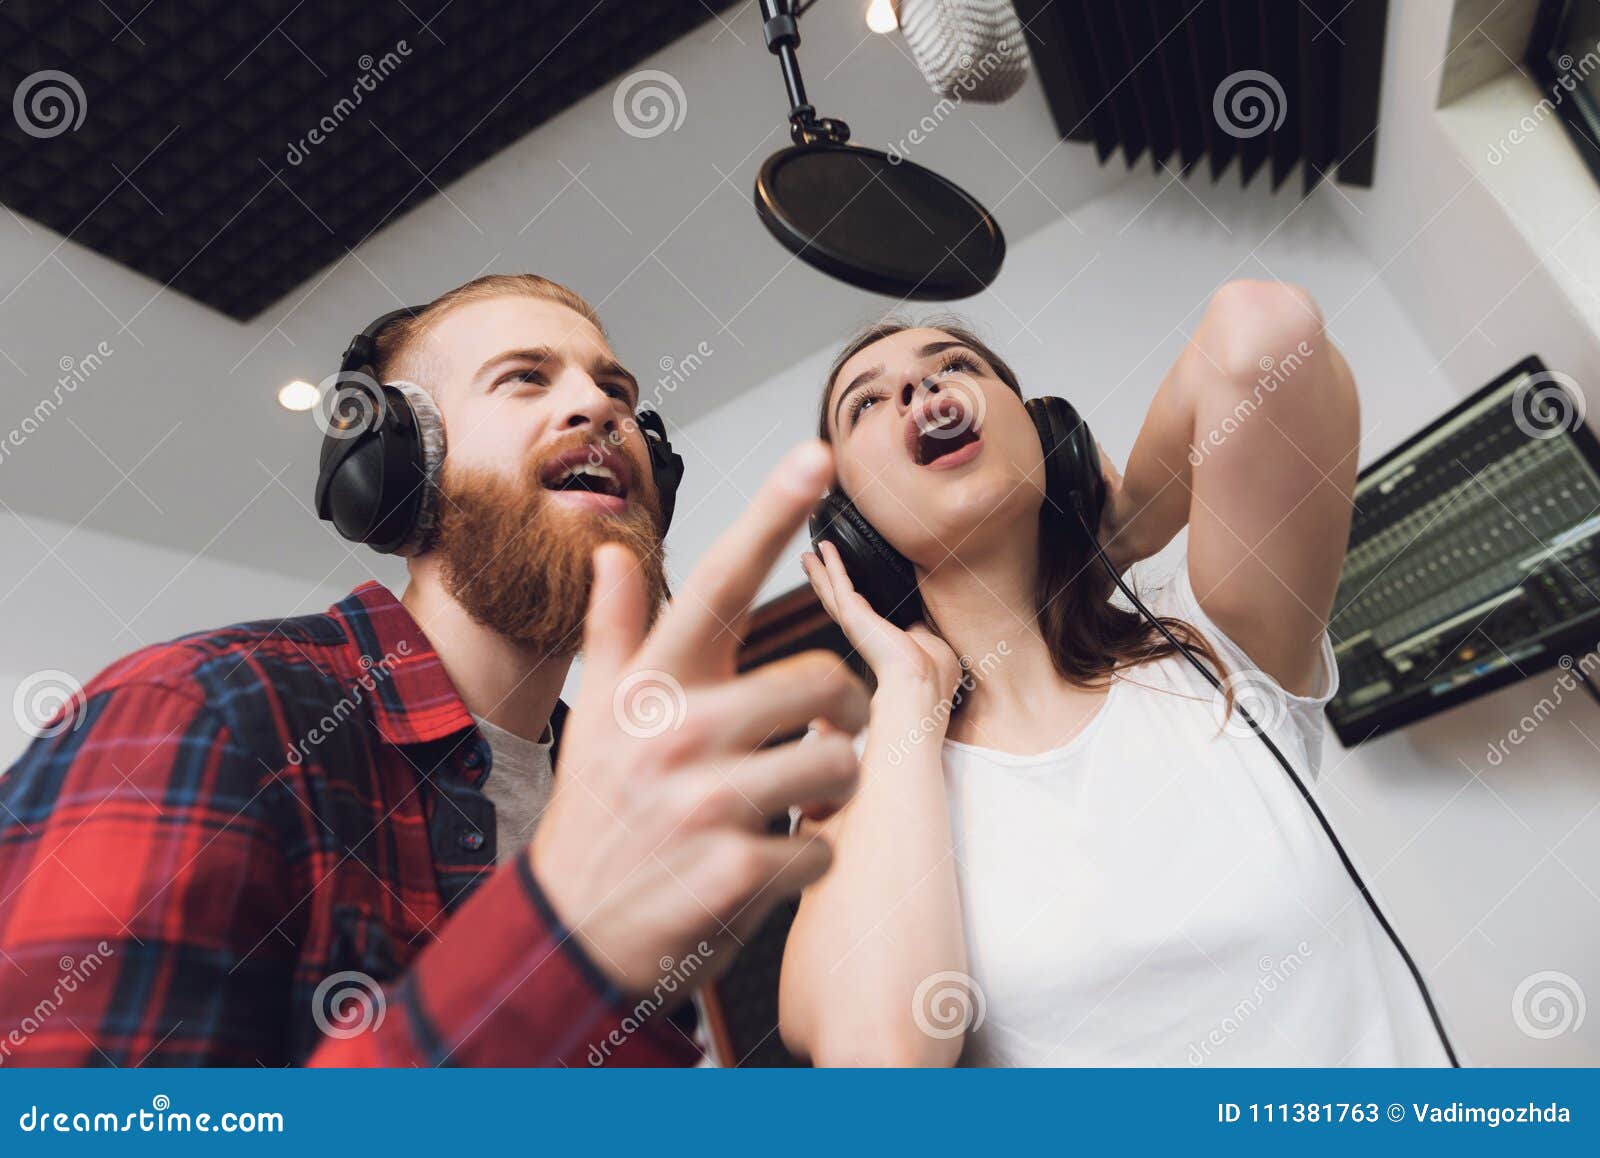 男人和妇女在一间现代录音室唱一首歌曲. 人和妇女在一间现代录音室唱一首歌曲 在人是红色被检查的衬衣，在妇女一件白色T恤杉